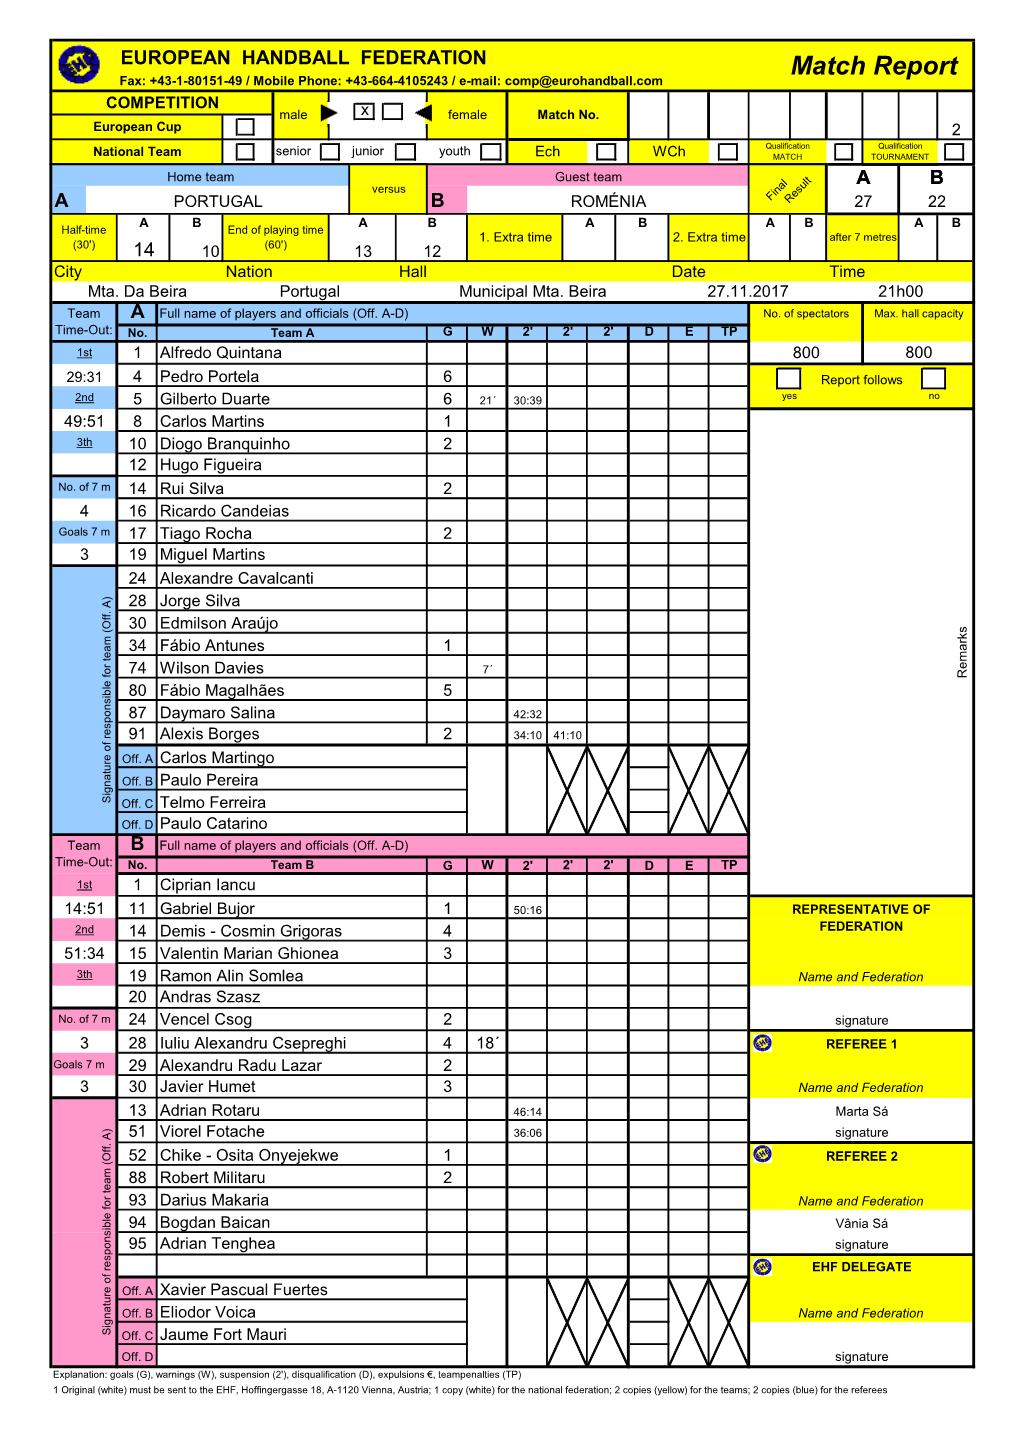 Match Report Fax: +43-1-80151-49 / Mobile Phone: +43-664-4105243 / E-Mail: Comp@Eurohandball.Com COMPETITION Male X Female Match No